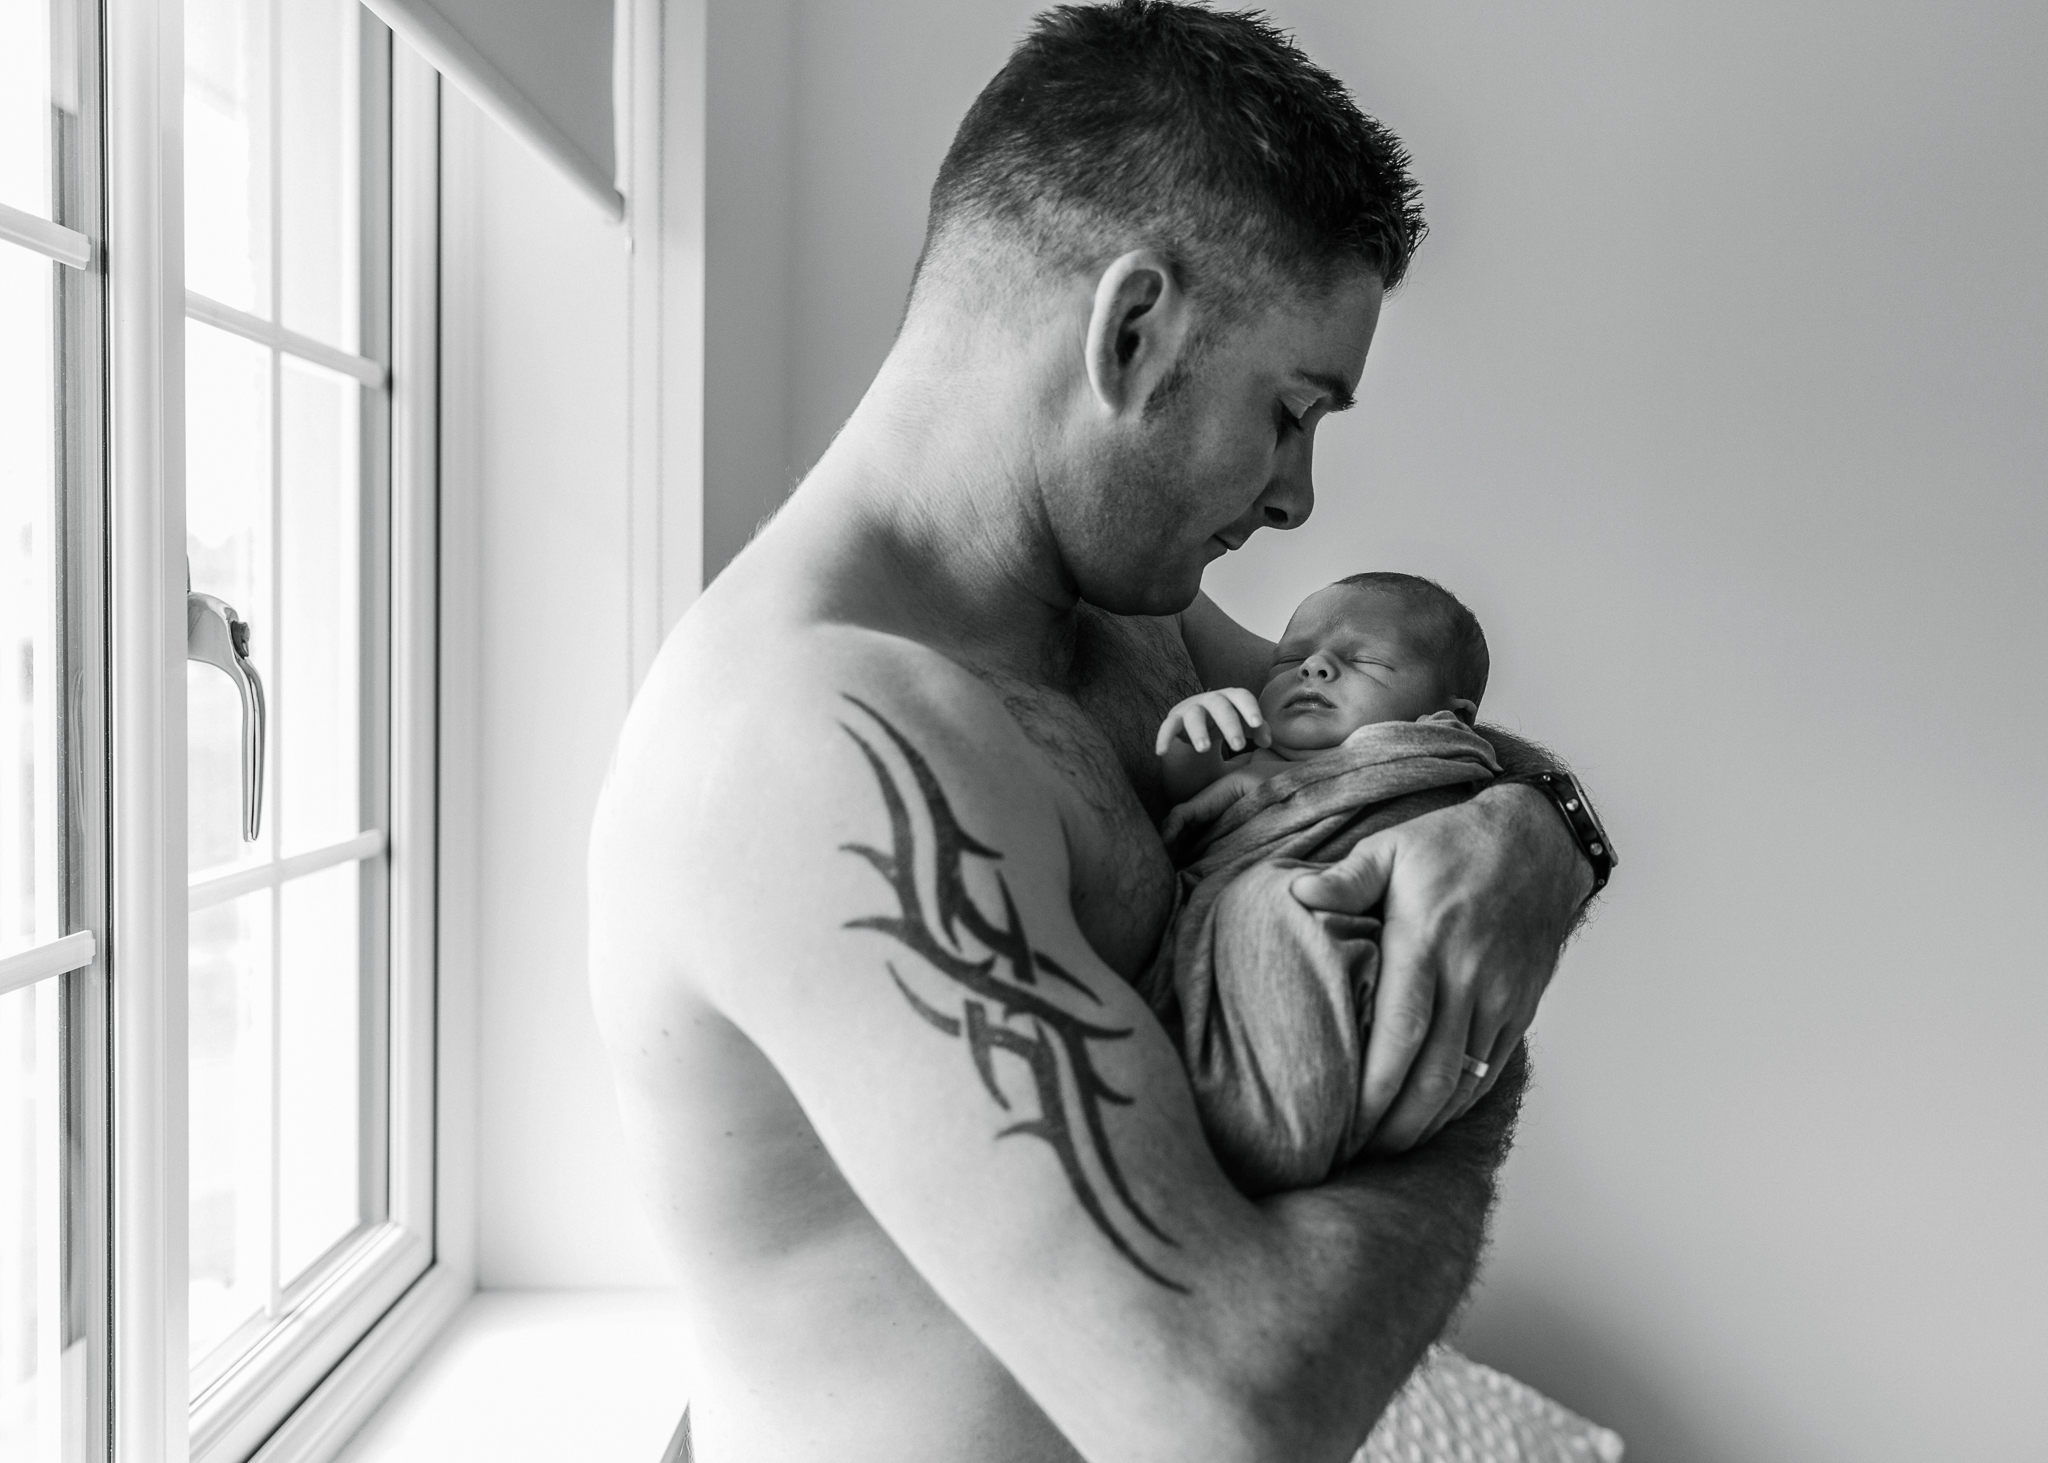 aberdeen newborn photographer at home newborn